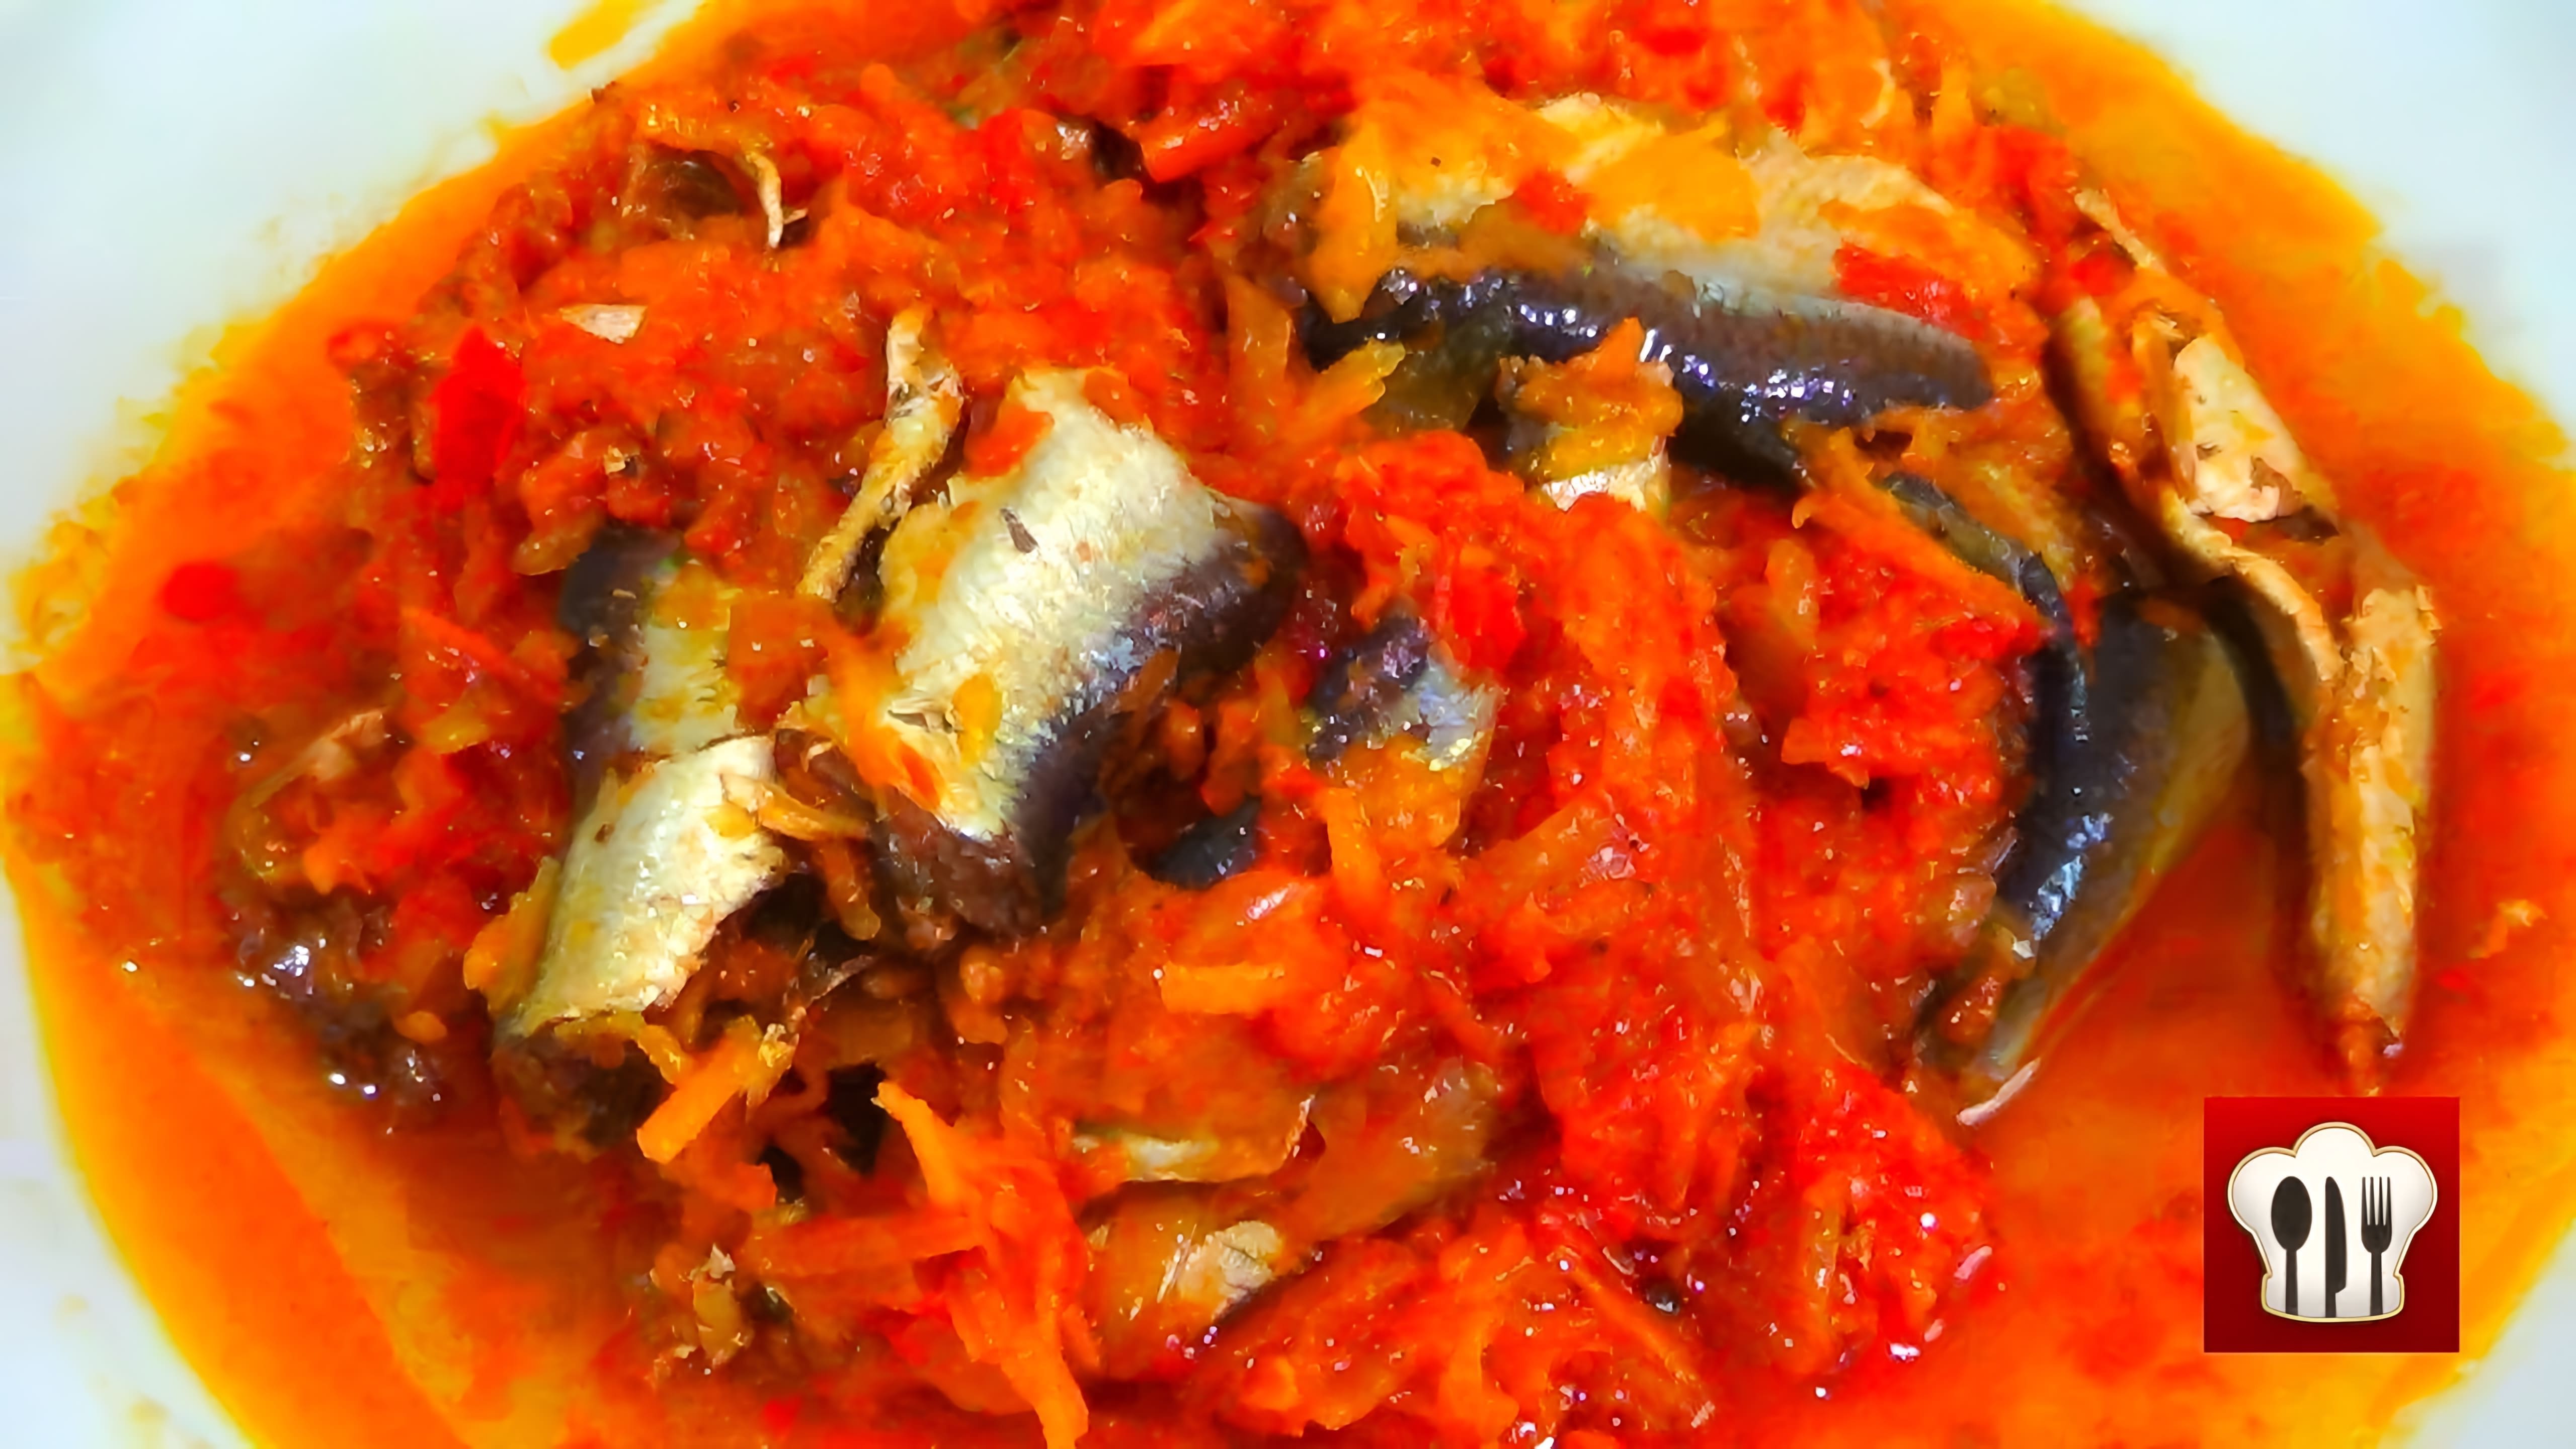 Видео как приготовить консервированную рыбу в томатном соусе, используя рыбу сазанку вместо кильки